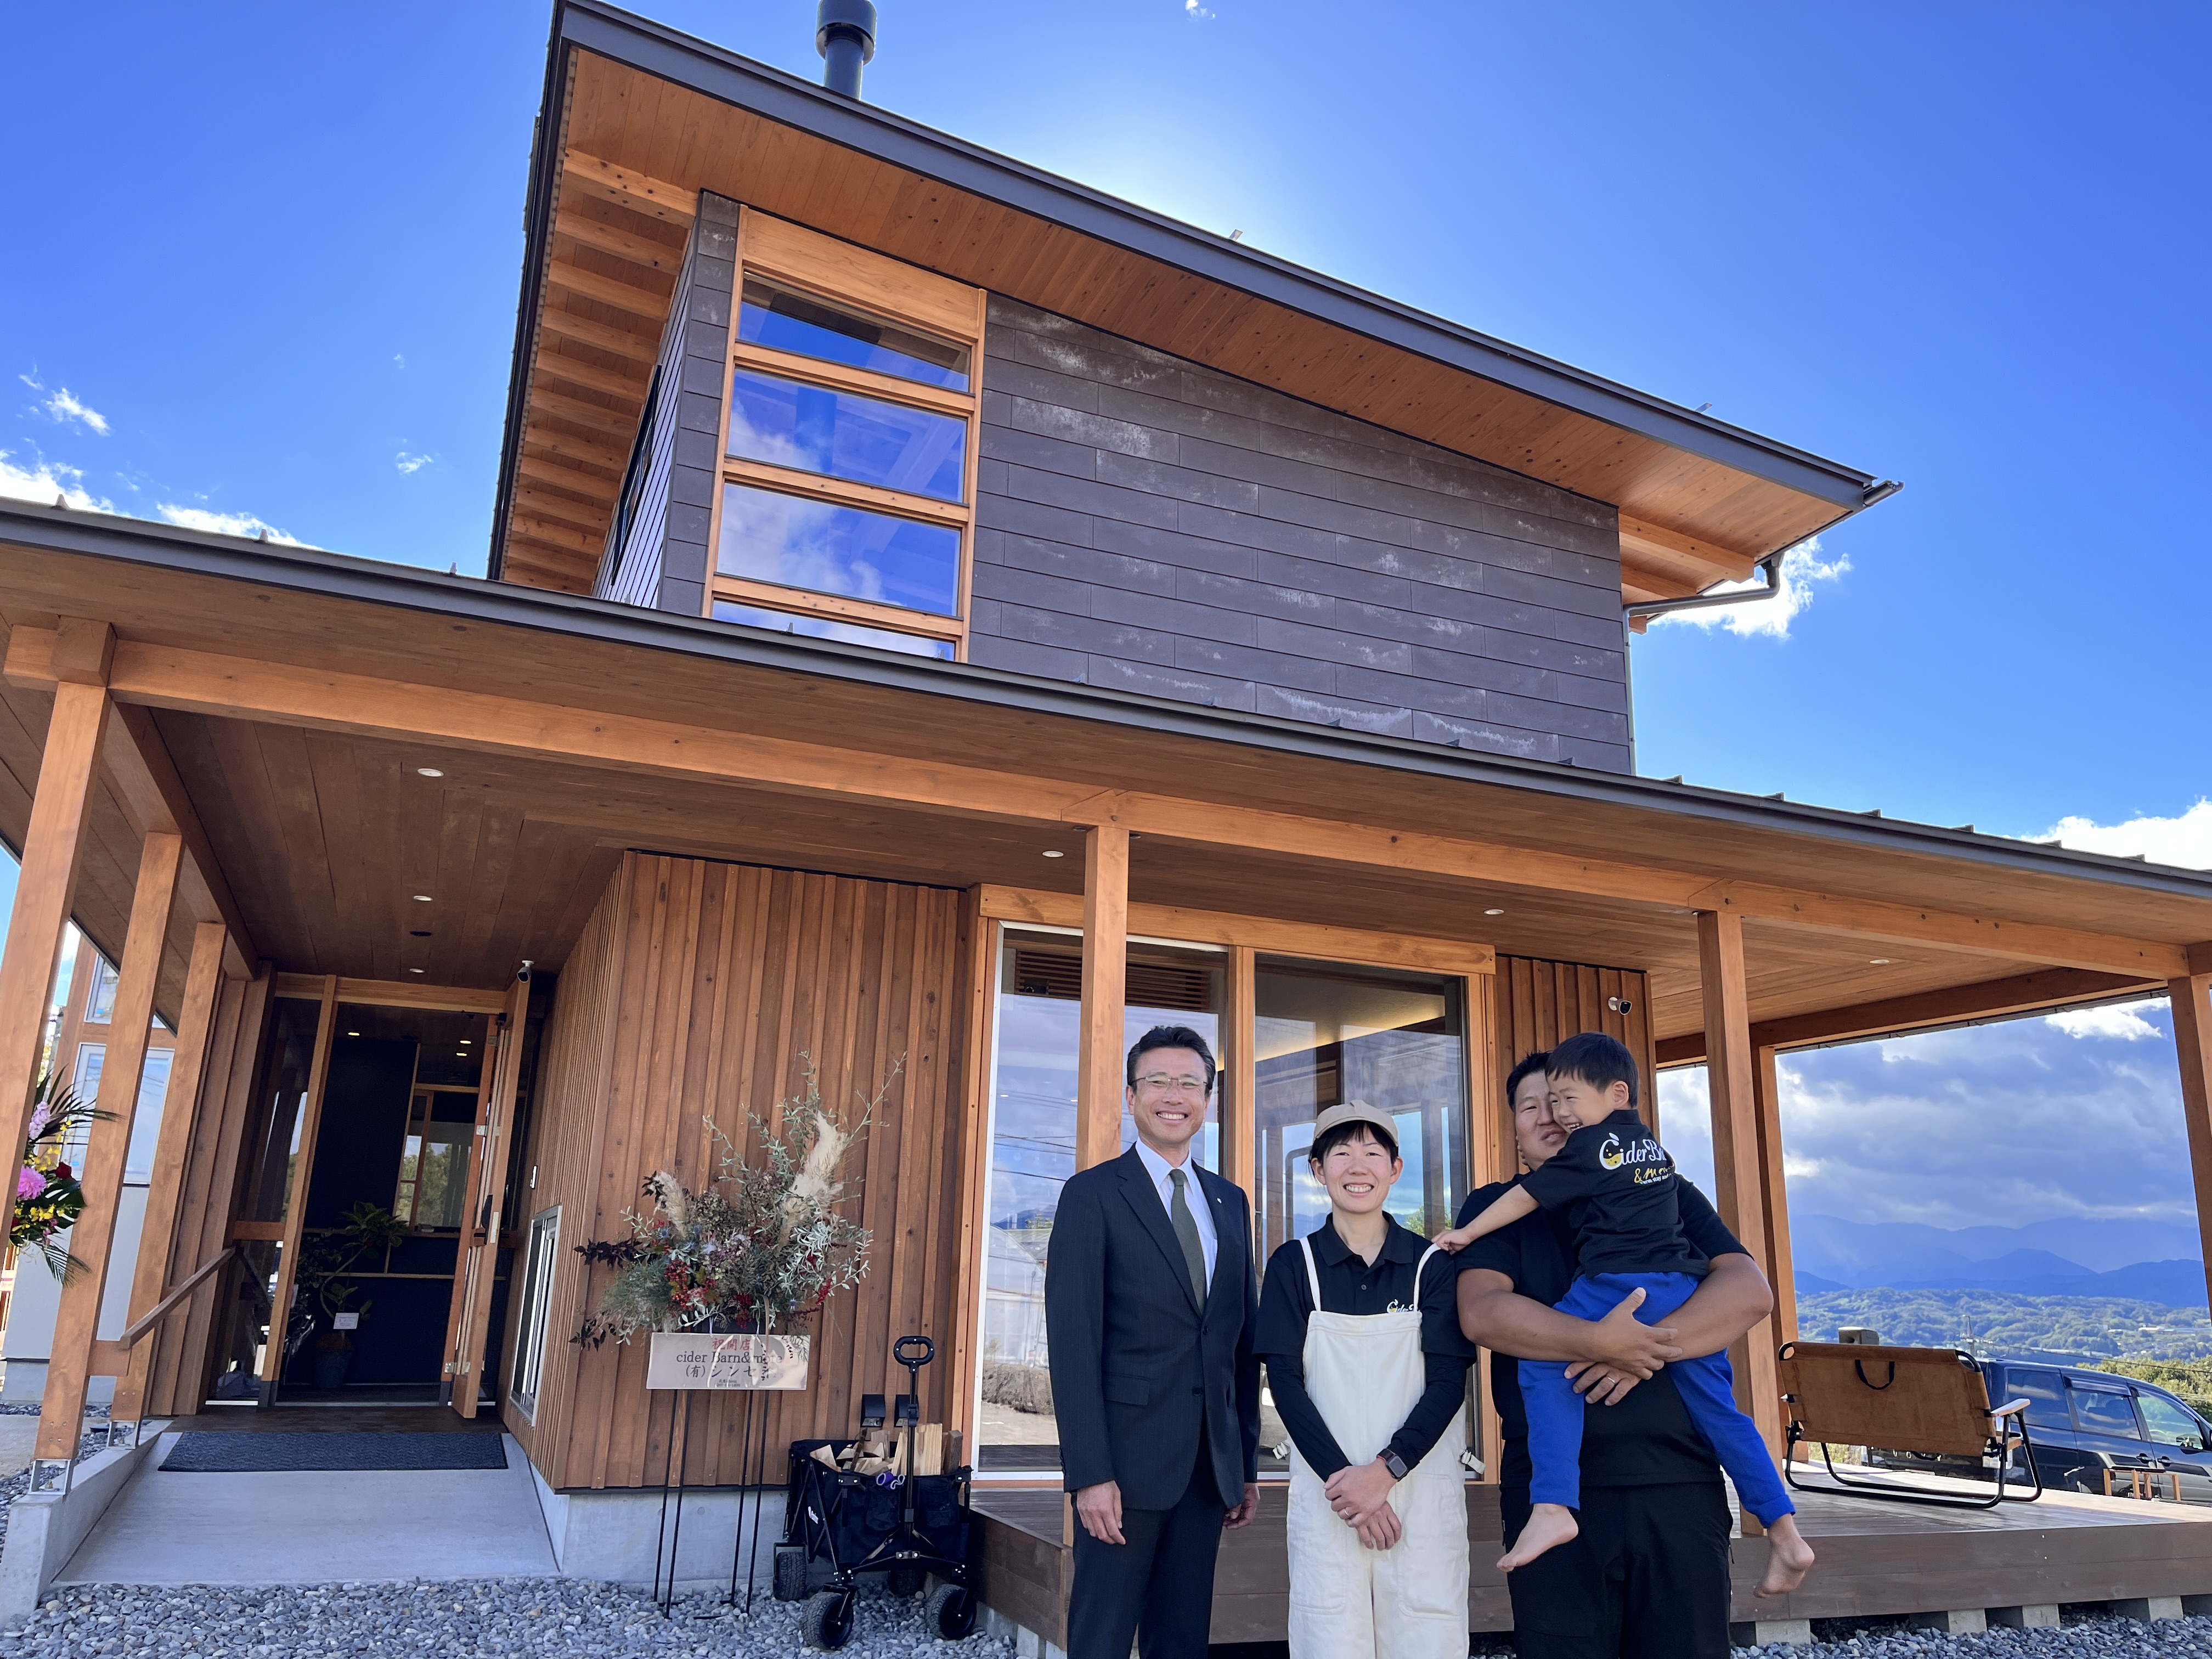 プレオープンした施設の外観と殿倉さん一家と飯田市市長